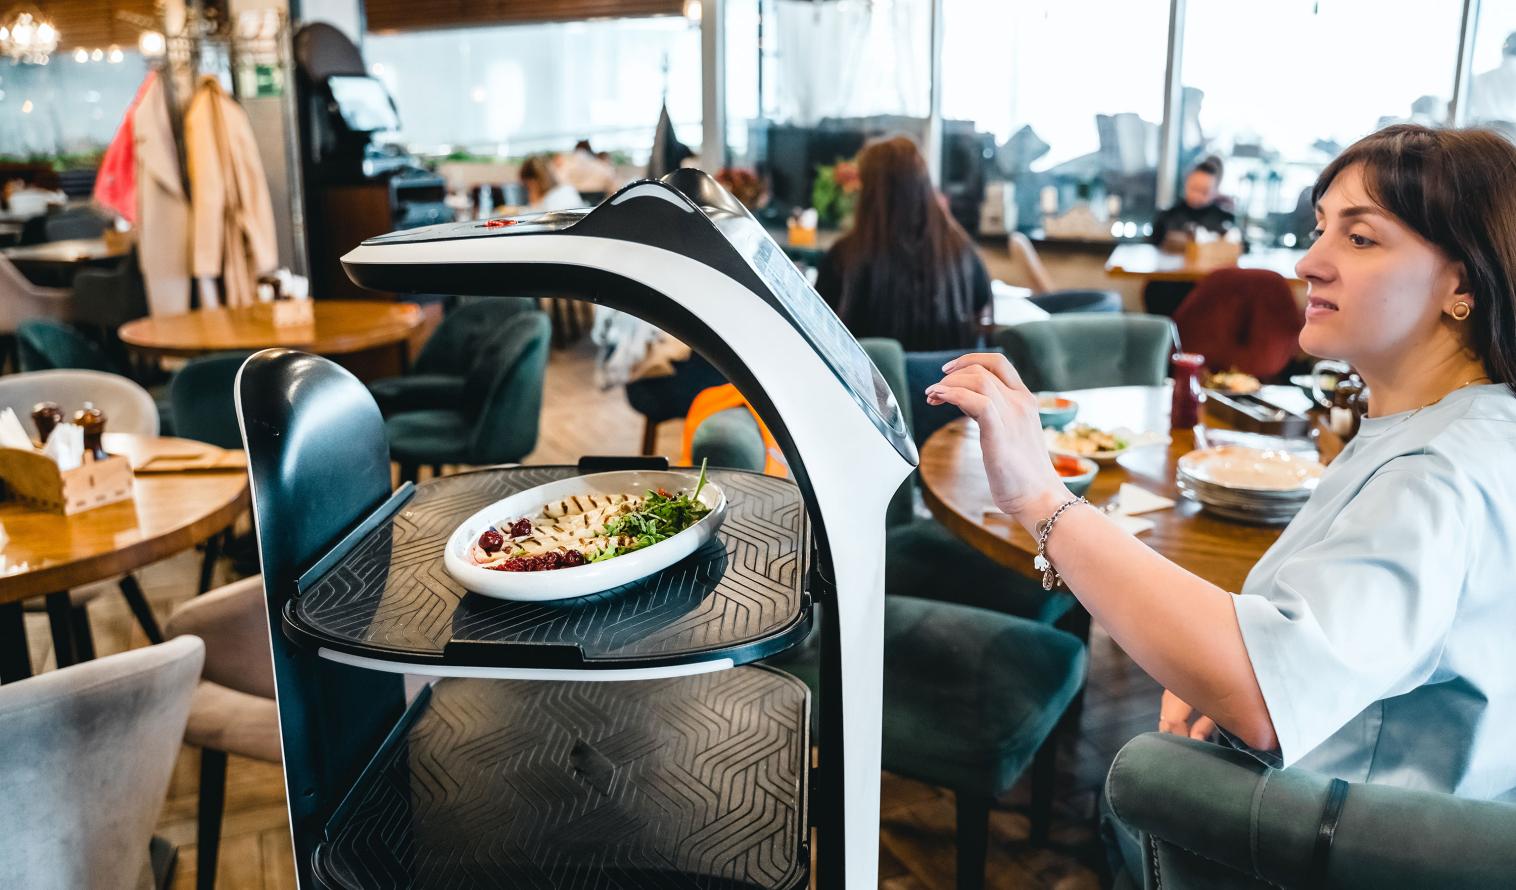 Roboter-Kellner serviert einer Frau Essen in einem modernen Restaurant.